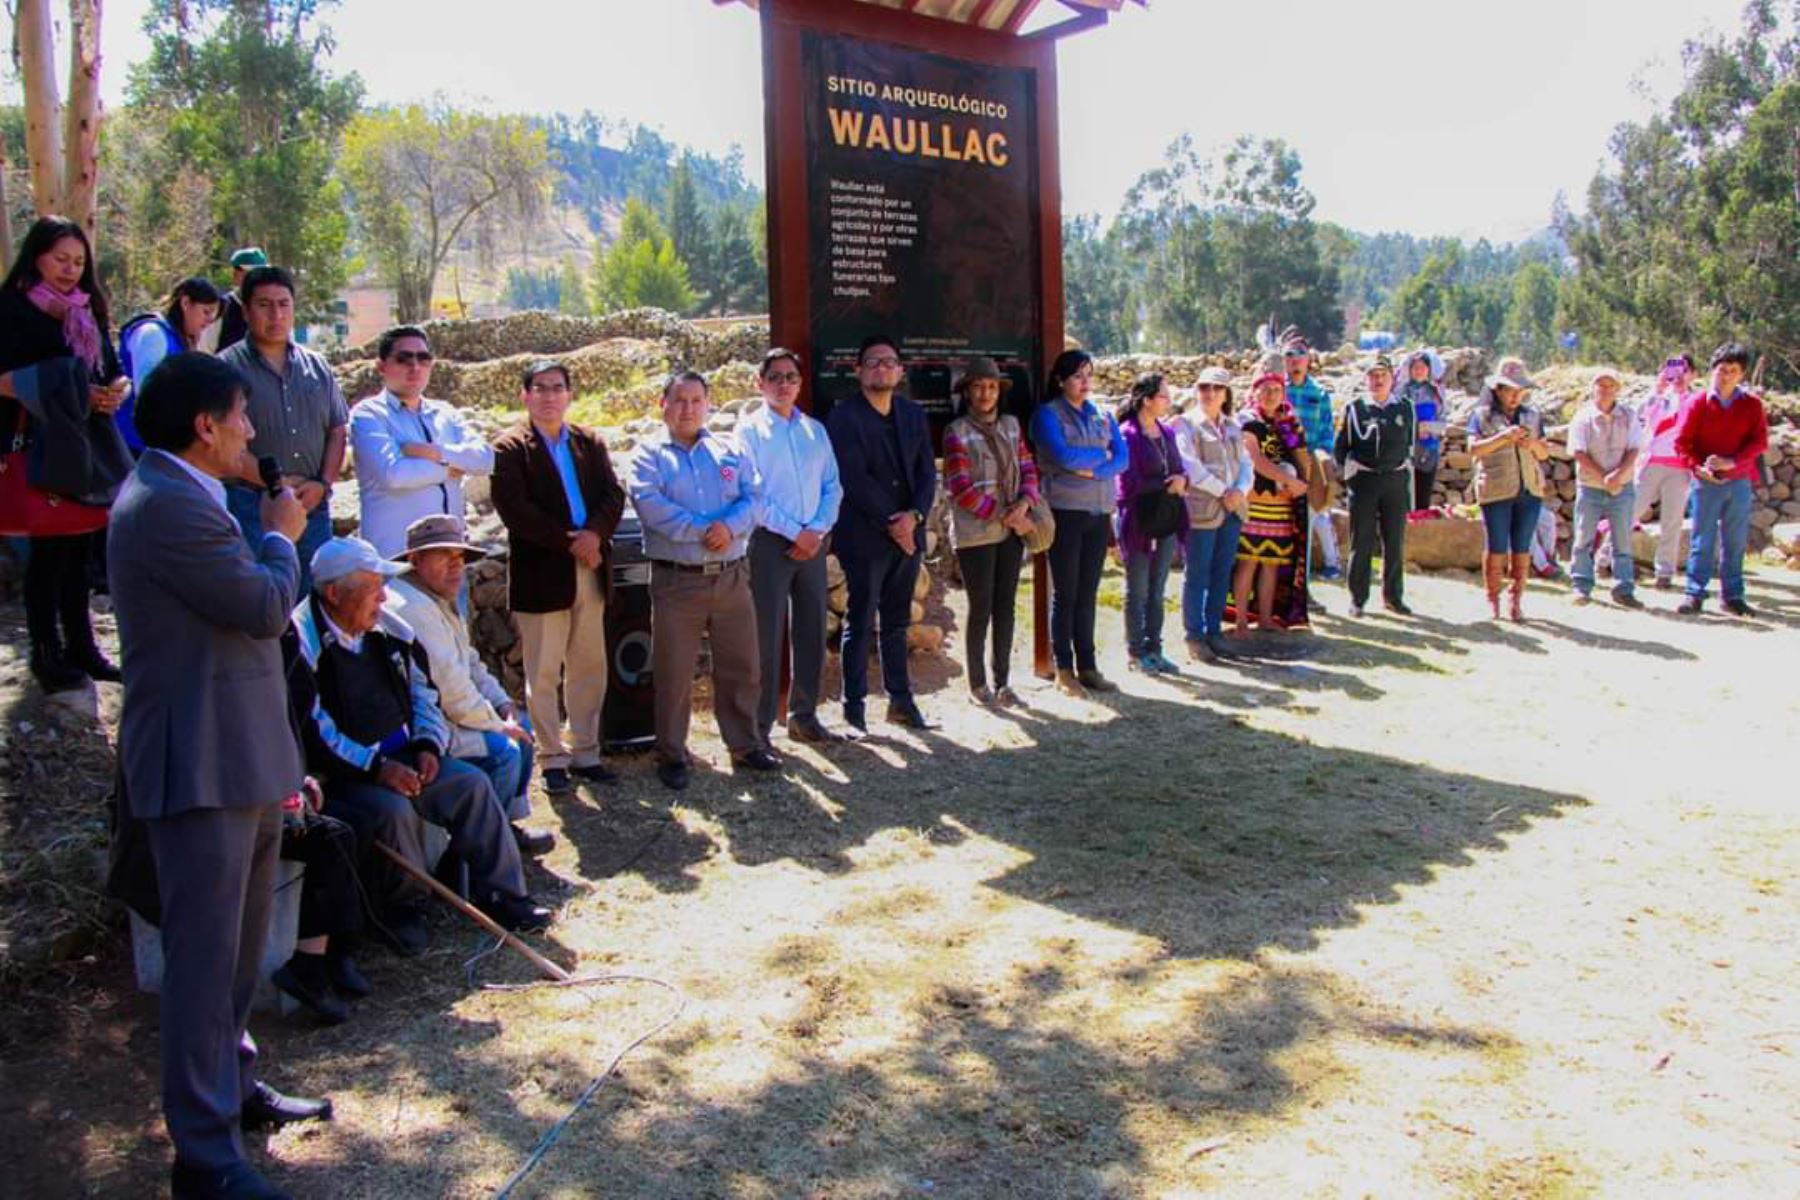 Con una fiesta cultural el complejo arqueológico de Waullac, ubicado en la provincia de Huaraz, región Áncash, reabrió sus puertas.